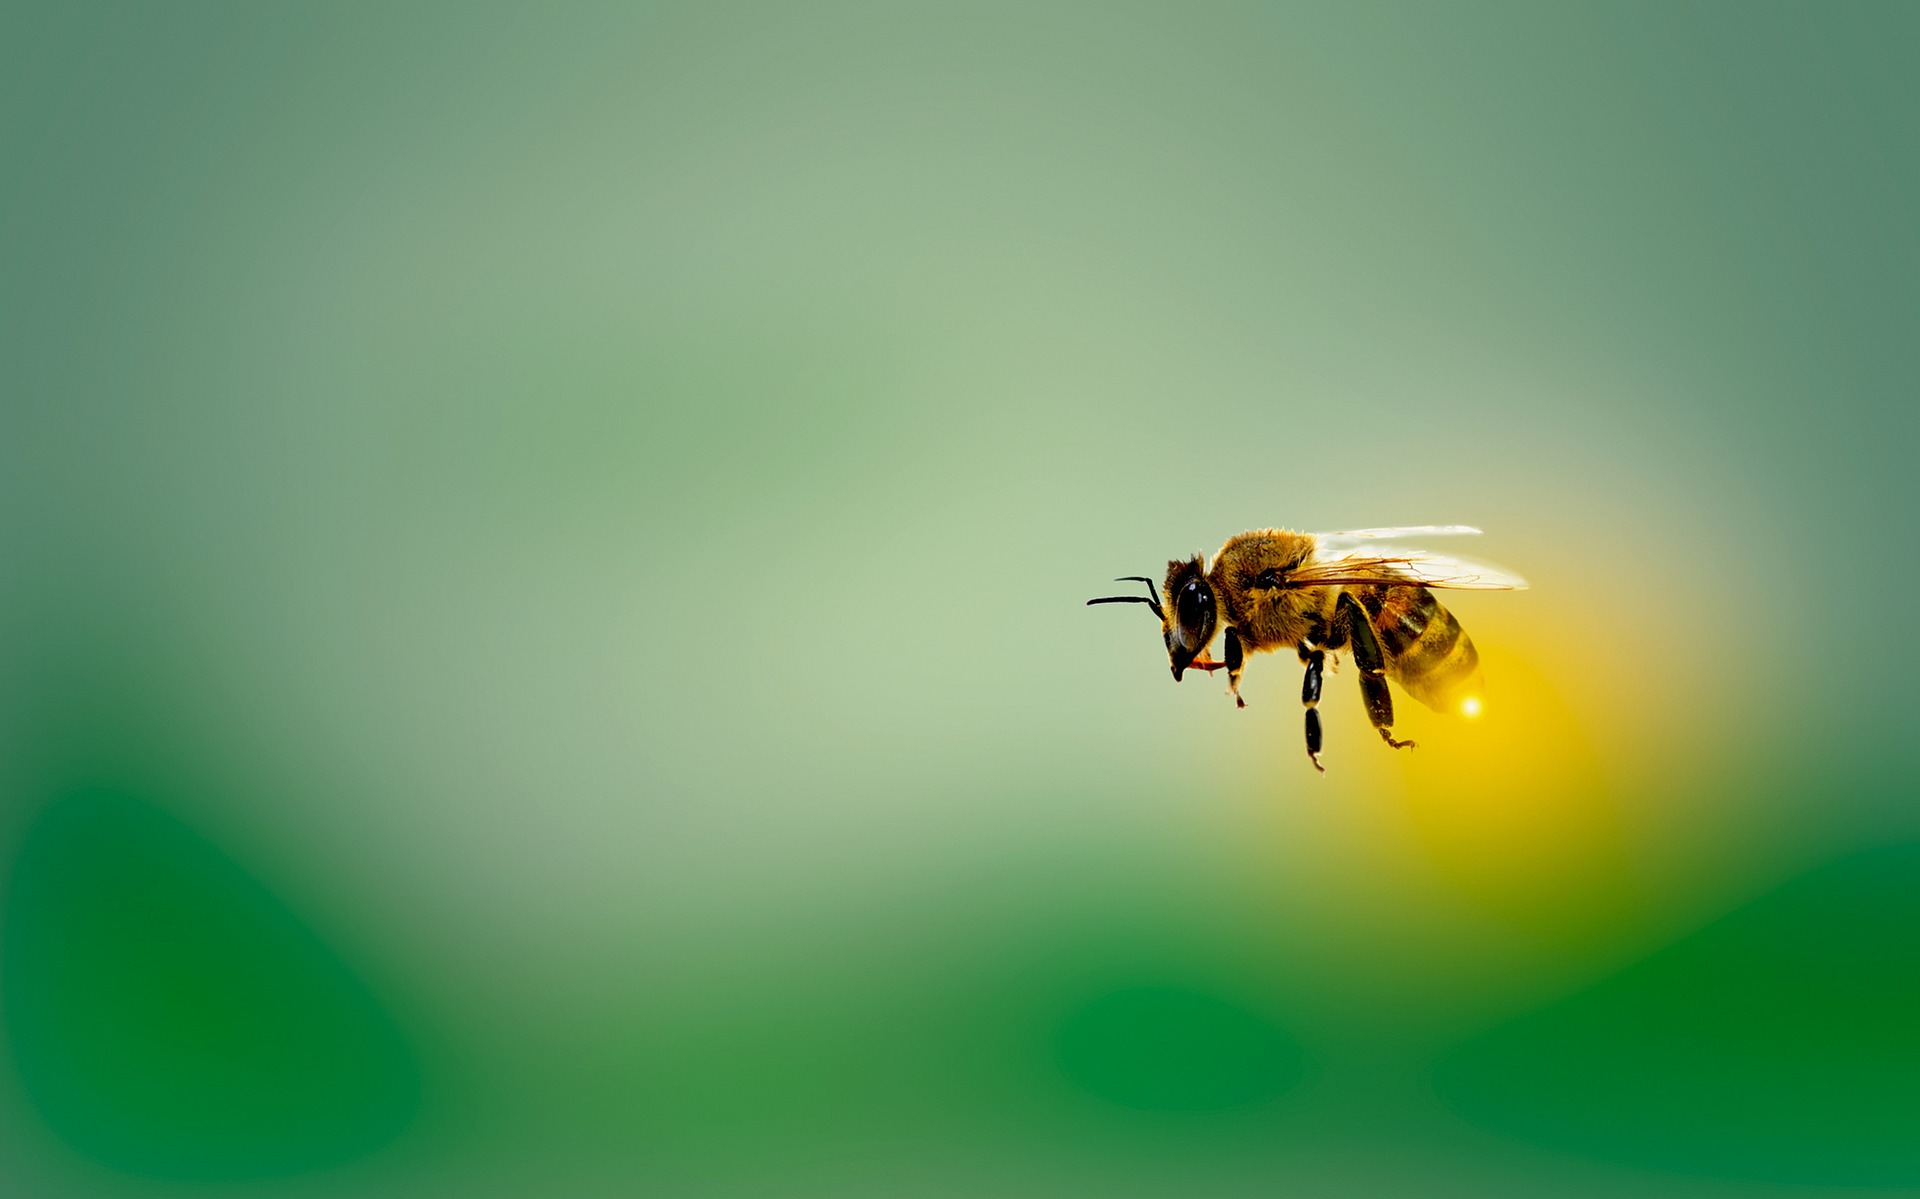 Αλλεργικό σοκ από μέλισσες: Σμήνος επιτέθηκε σε 12χρονο αγόρι στη Χαλκίδα